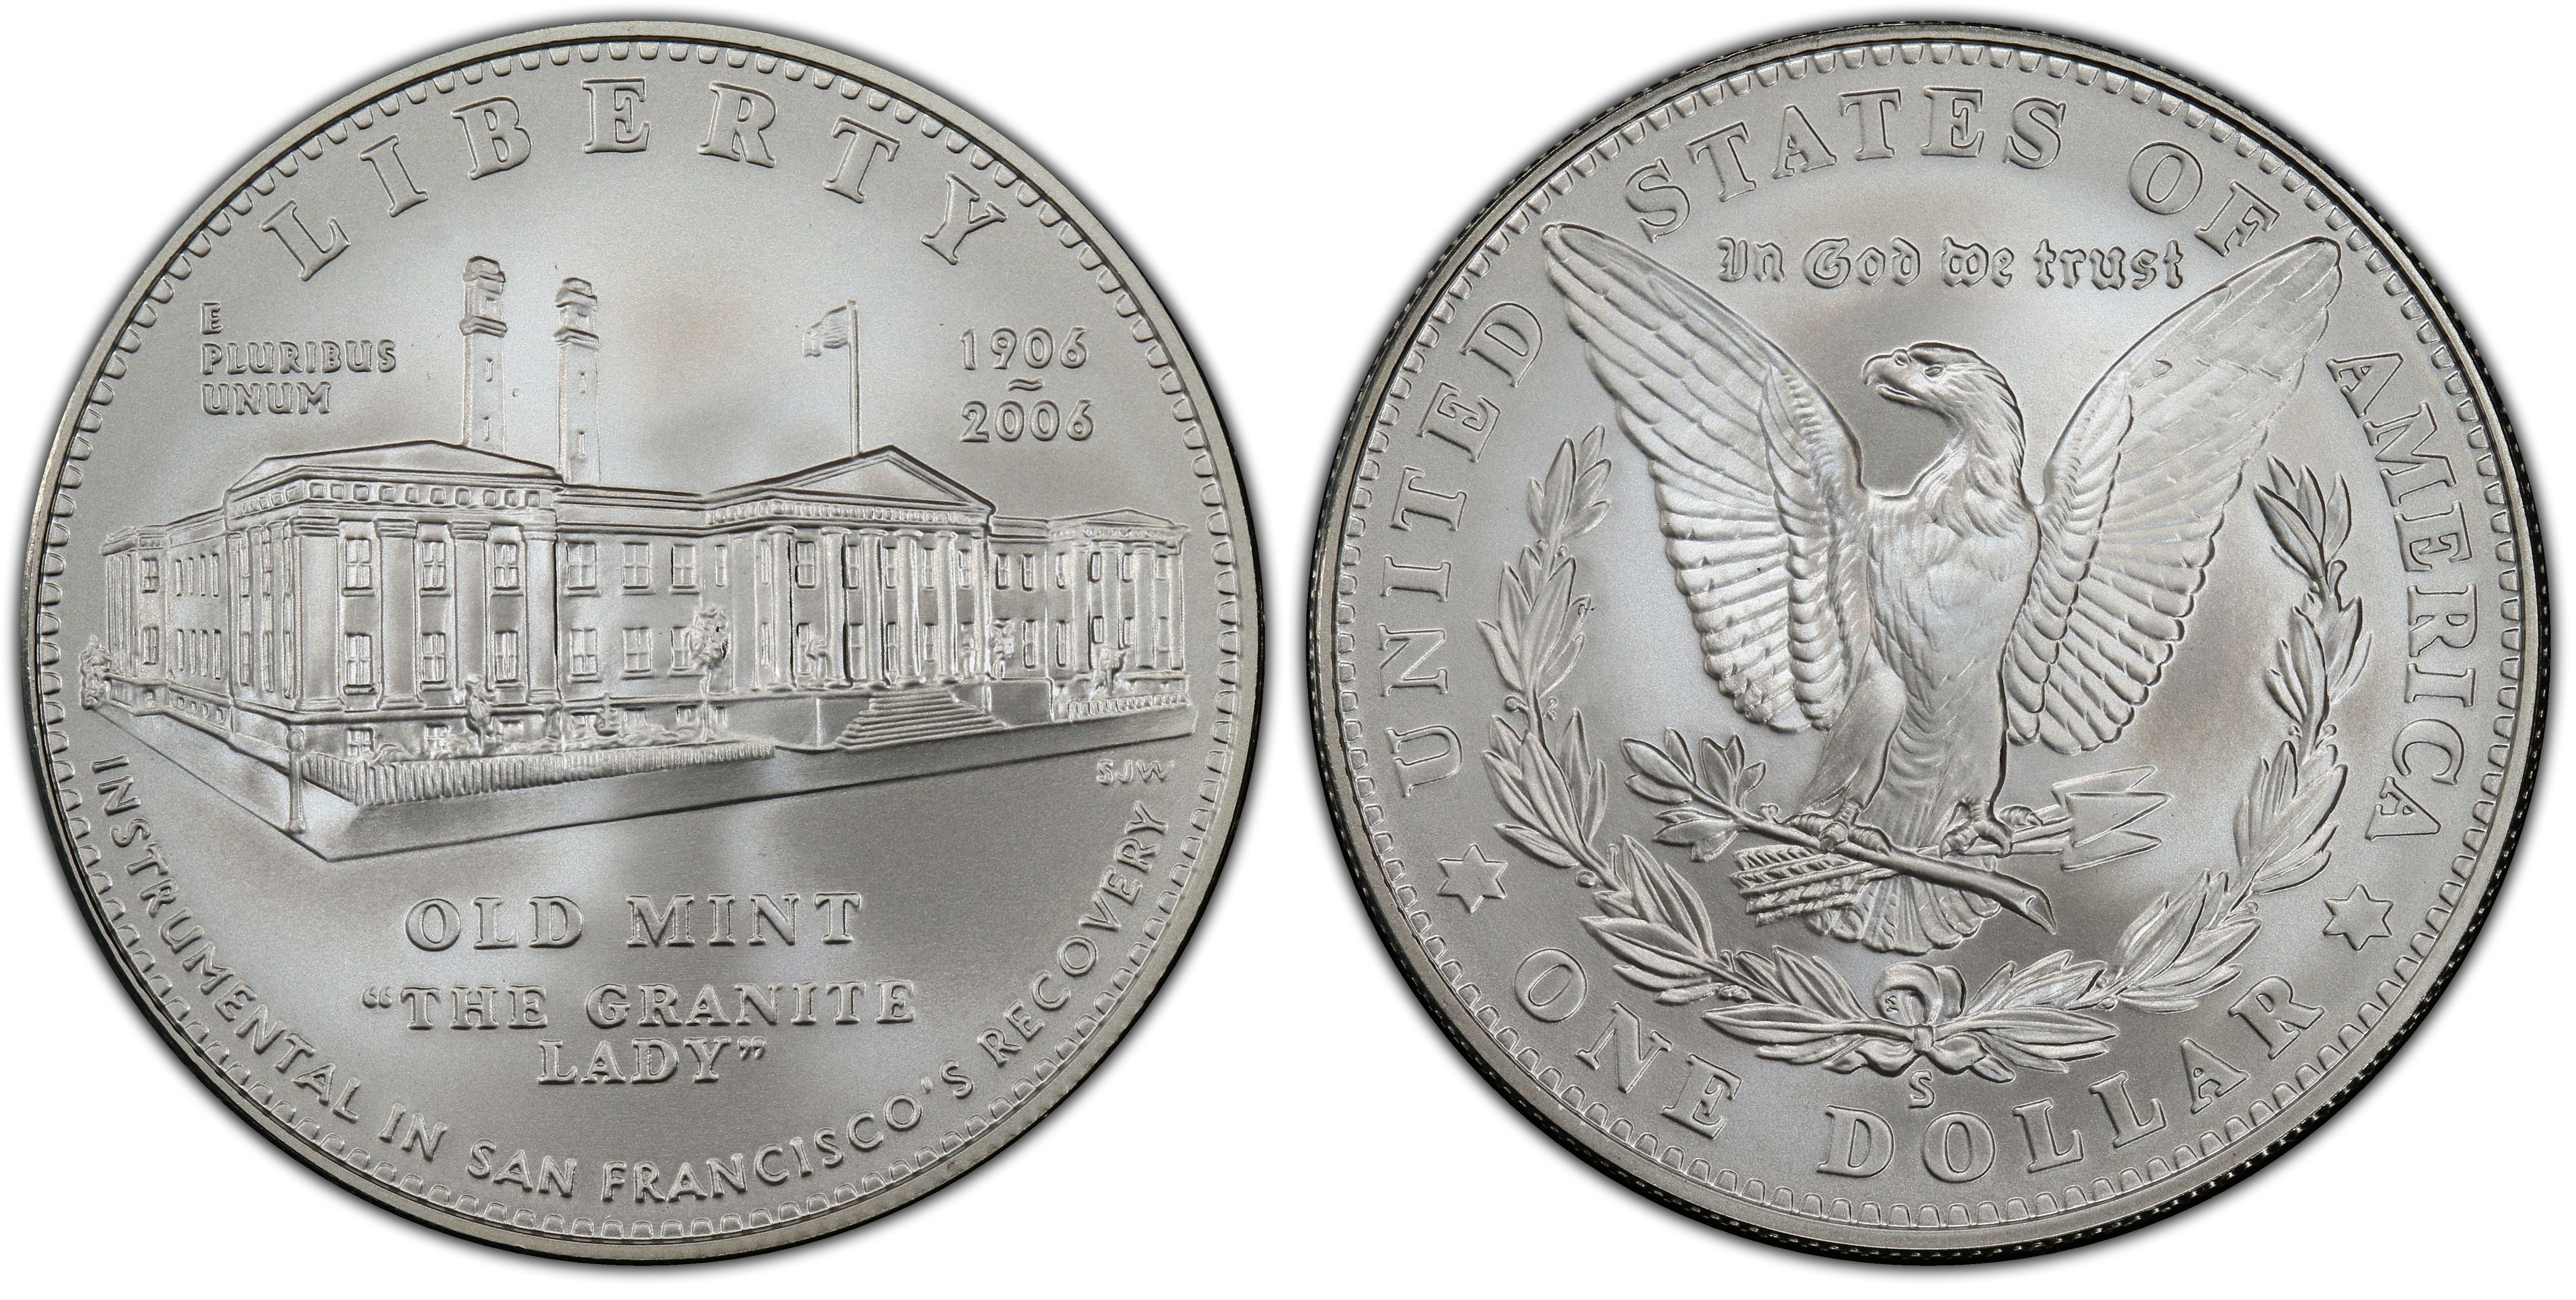 2006-S $1 San Francisco Old Mint Commemorative Silver Dollar in OGP BU